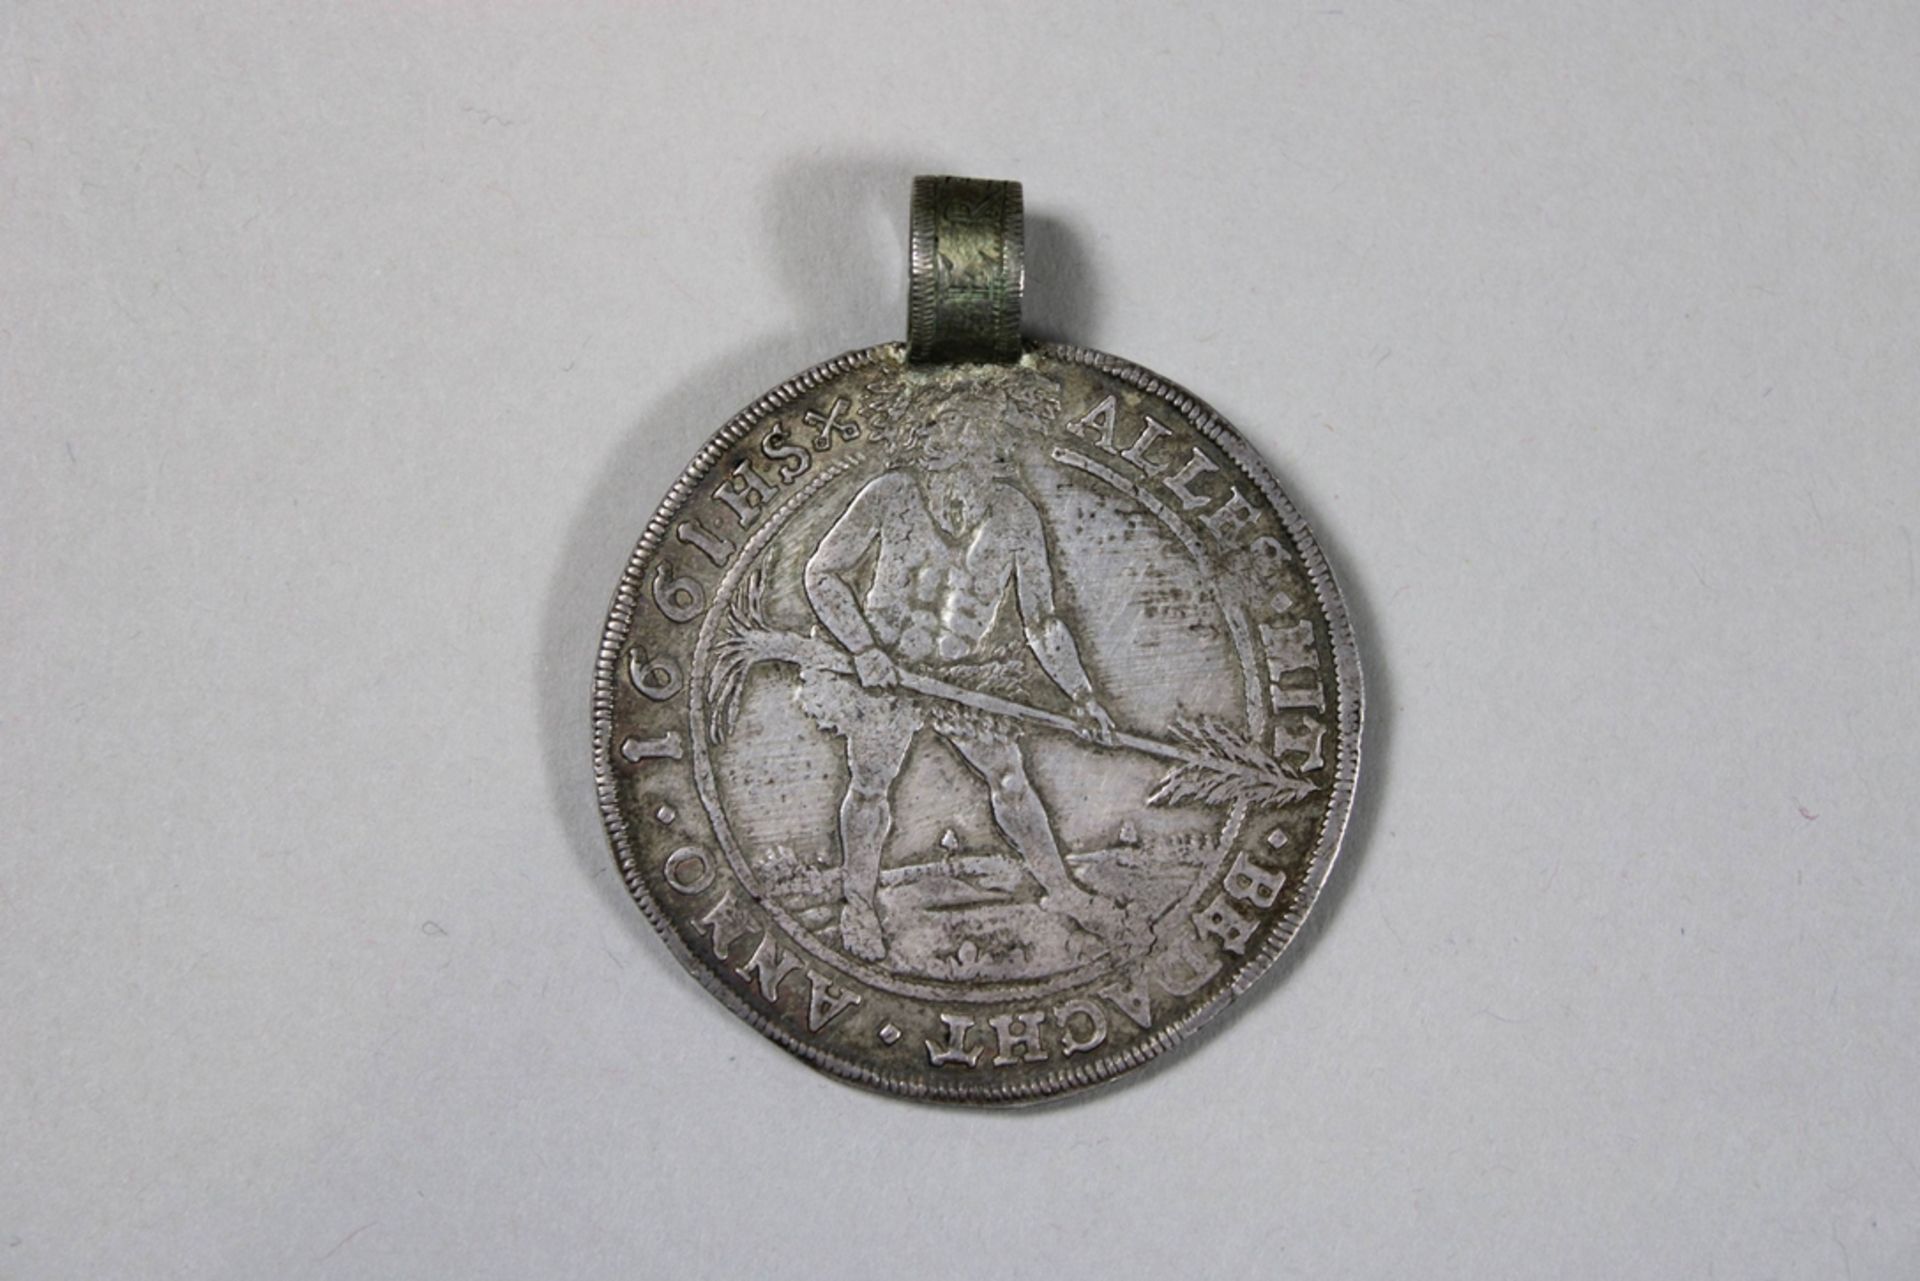 Silbermünze. Nachträglich hinzugefügter Anhänger. Geprägt 1661 unter August der Jüngere. Altdeutsch